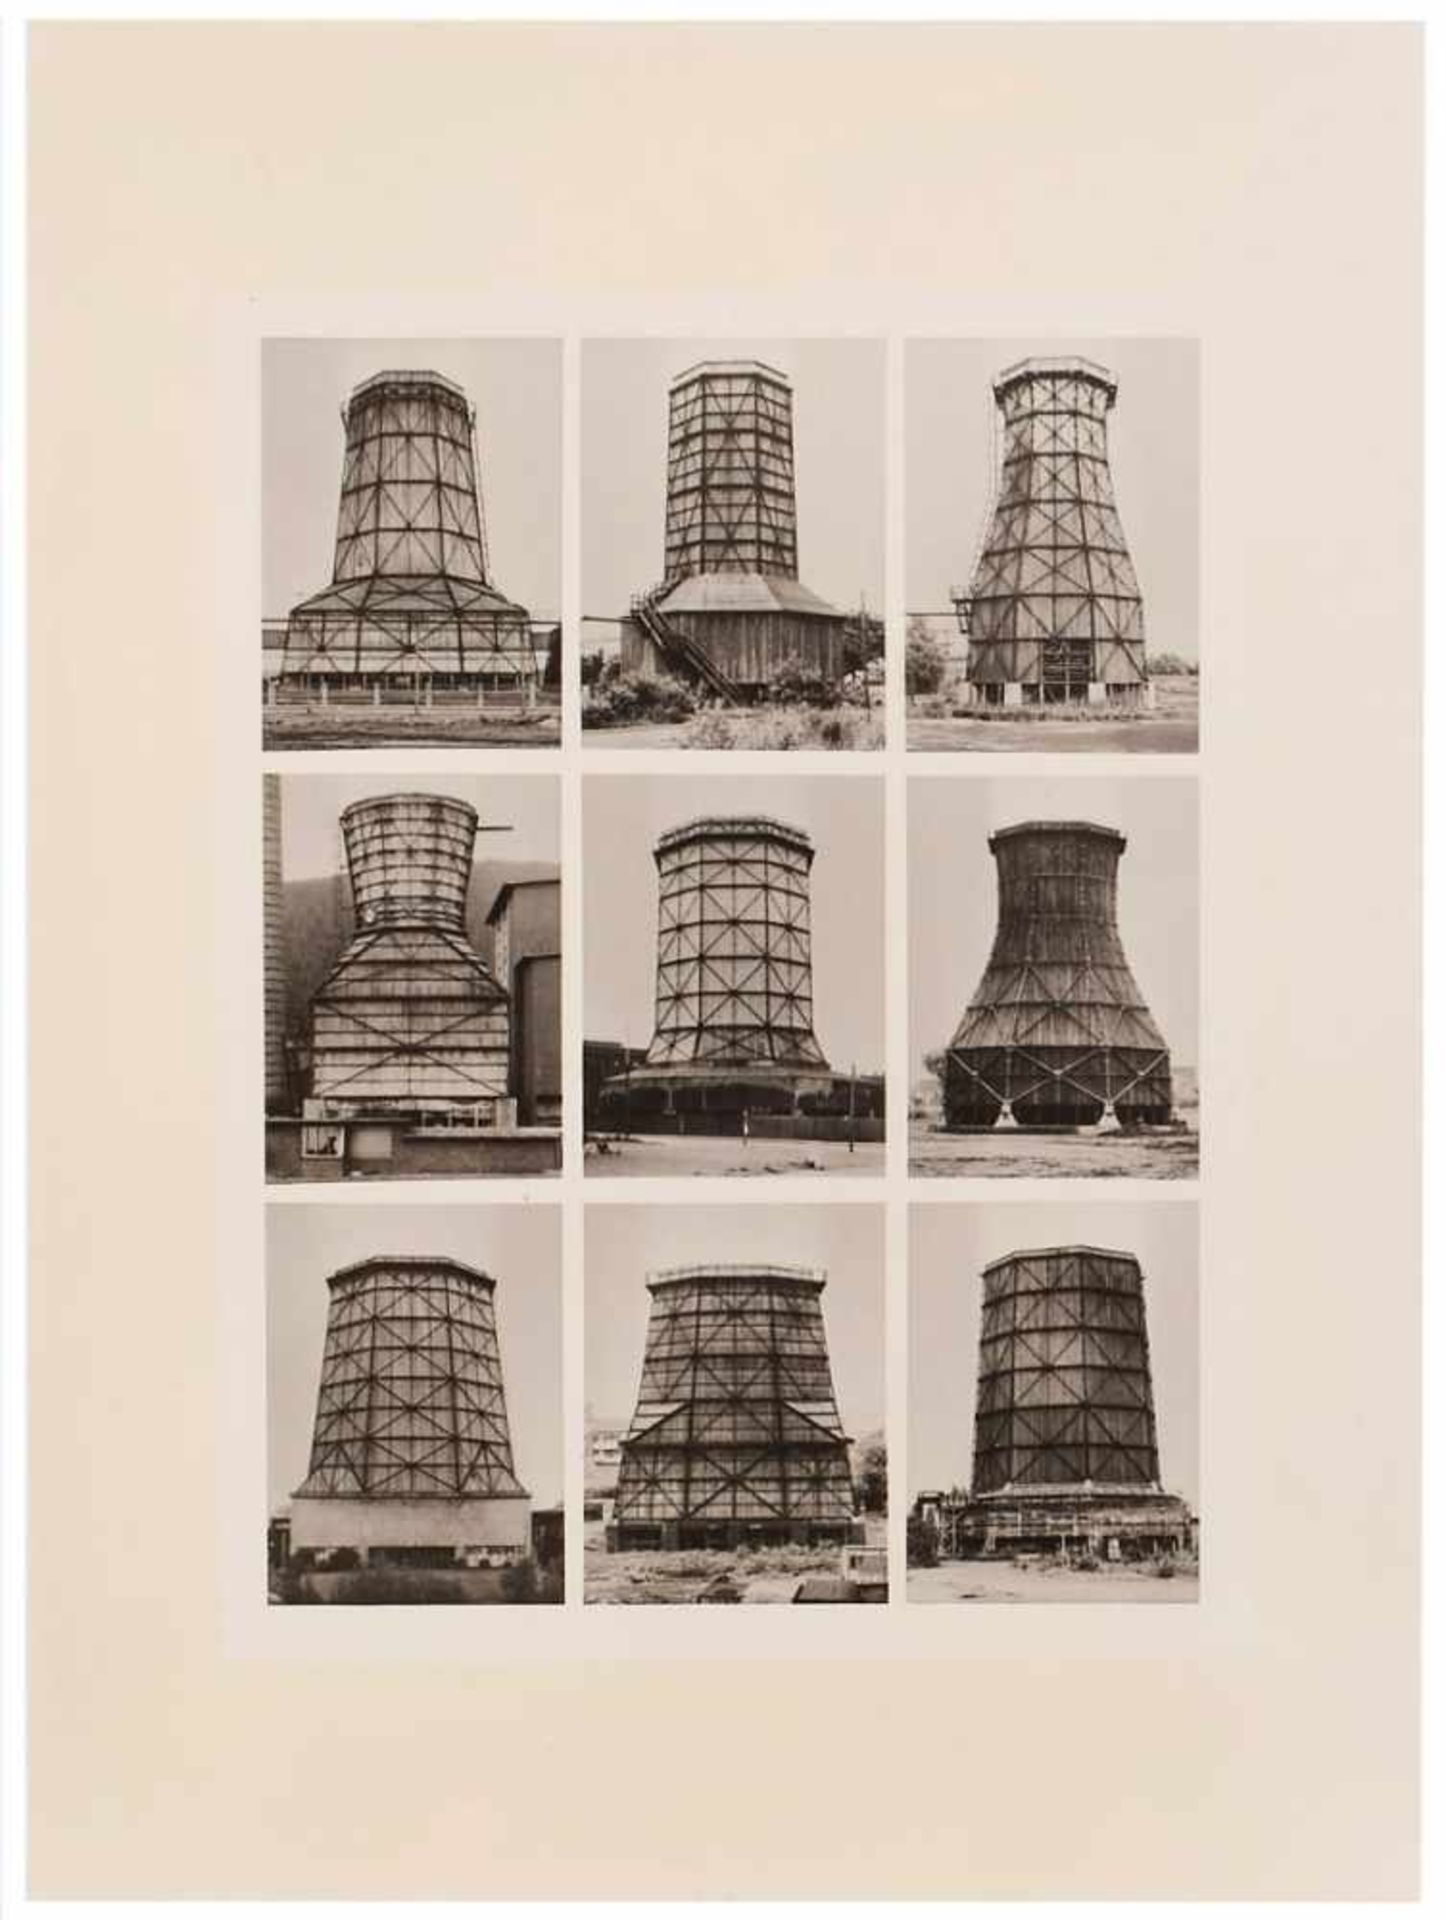 4 s/w Fotosnach Bernd & Hilla Becher "Industriebauten" um 1970 auf Baryt. 39,8 x 29,9 cm, o.R. etwas - Image 5 of 5